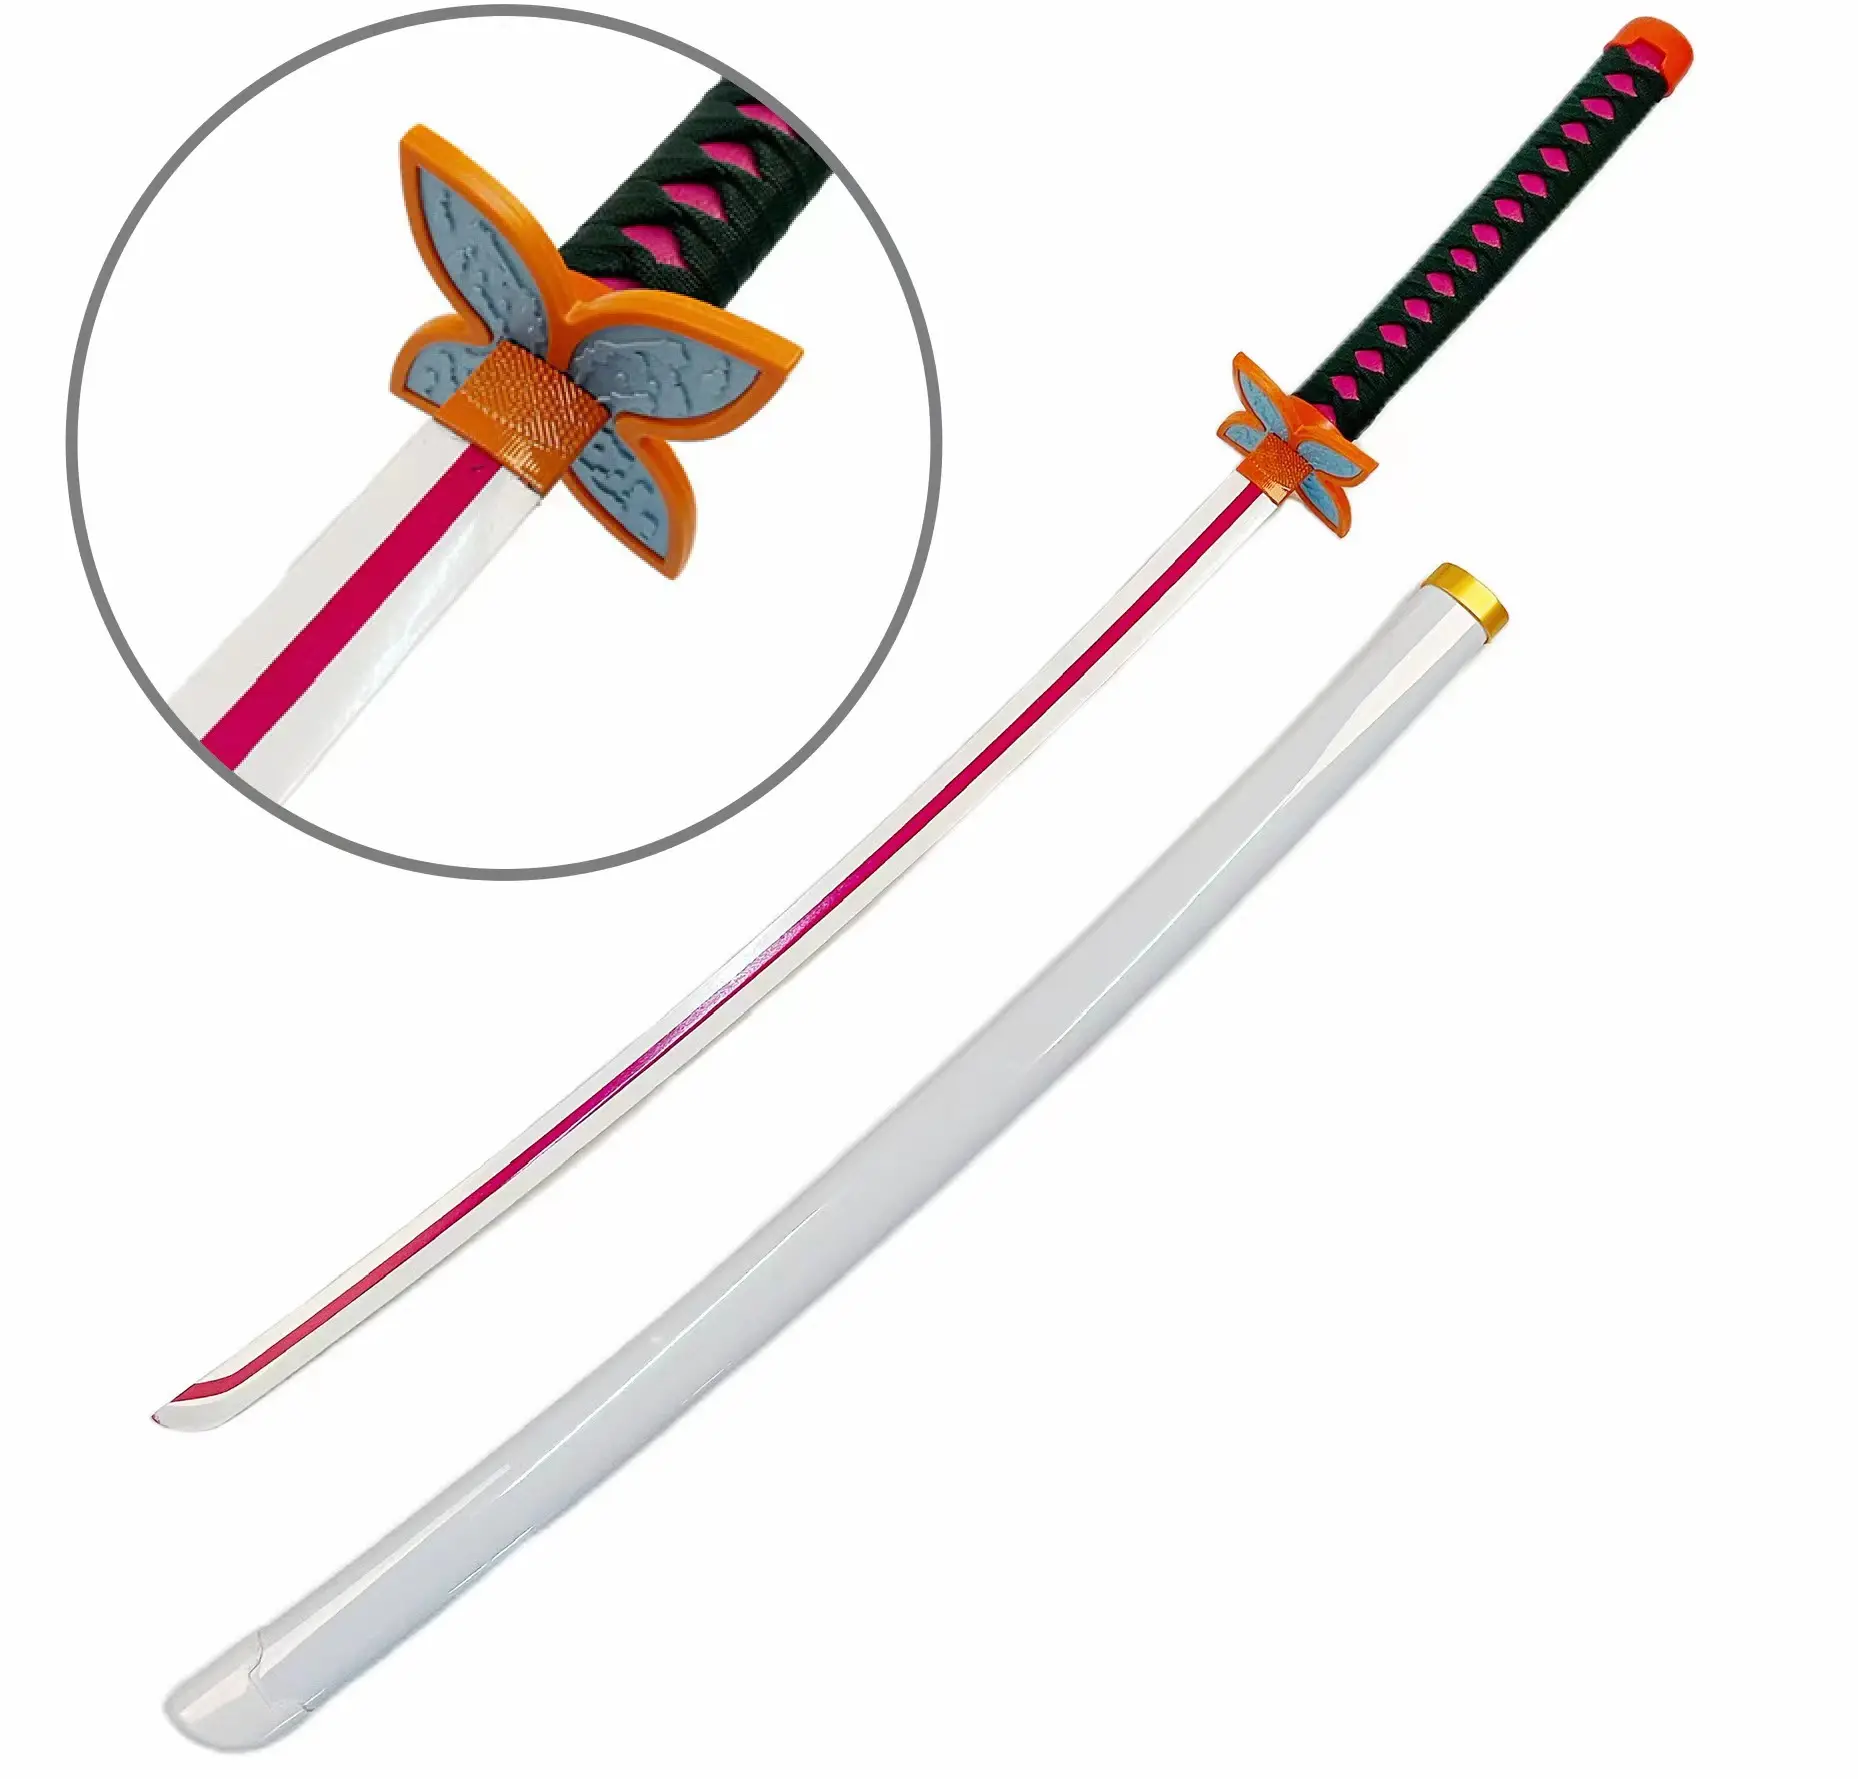 Anime Akatsuki Kunai épée armes lot de 10 pièces Offre Spéciale japon sac jouet unisexe OEM photos emballage couleur matériel